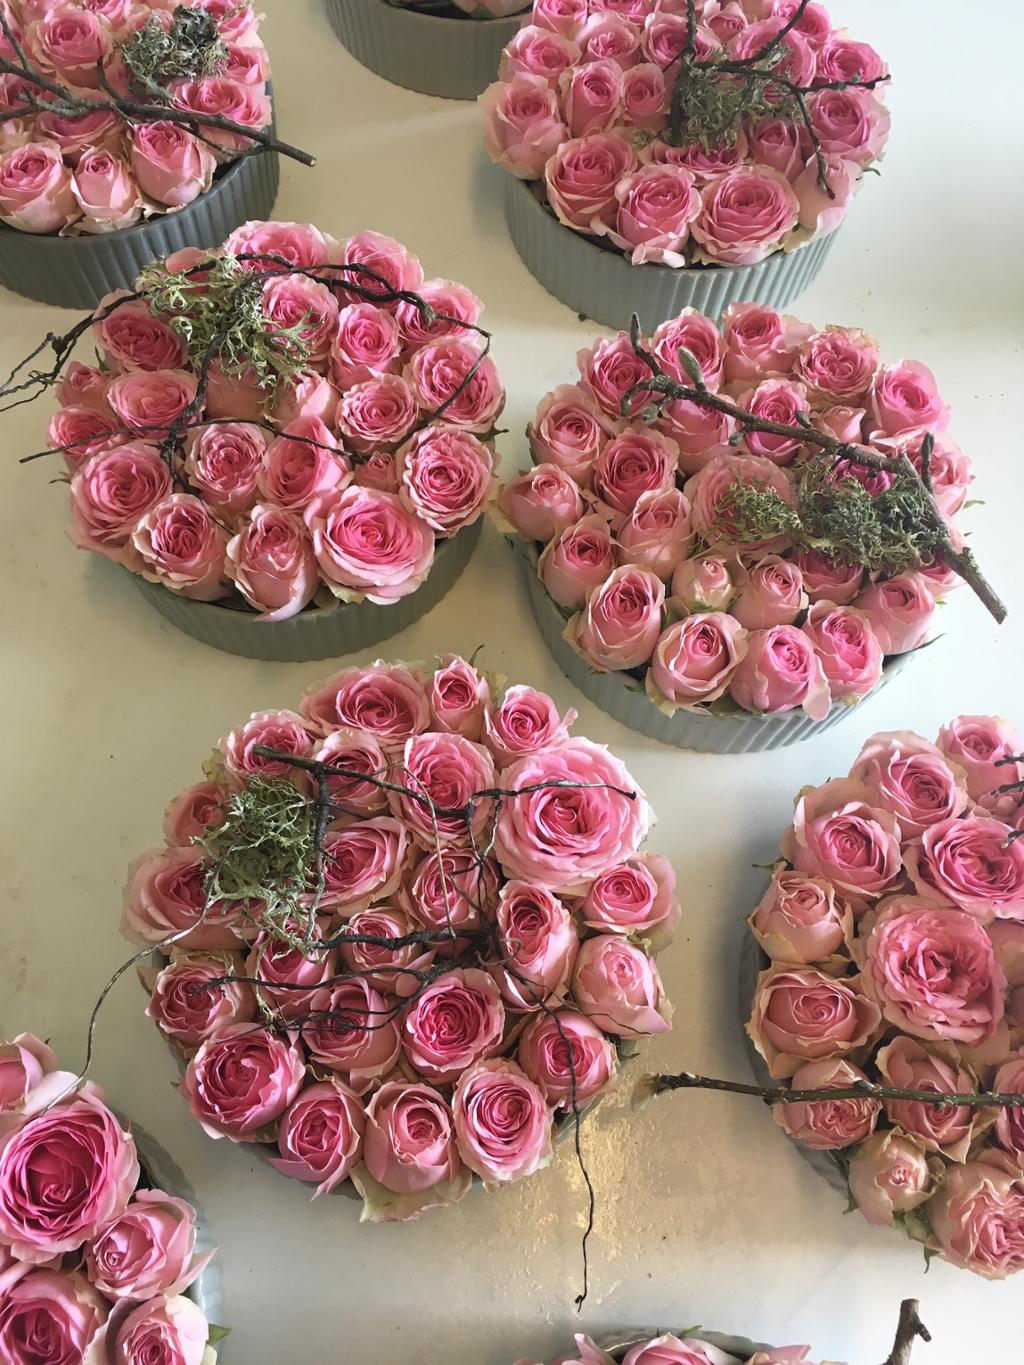 Runde blomsterdekorasjoner laga av rosa roser og kvistar. Foto.